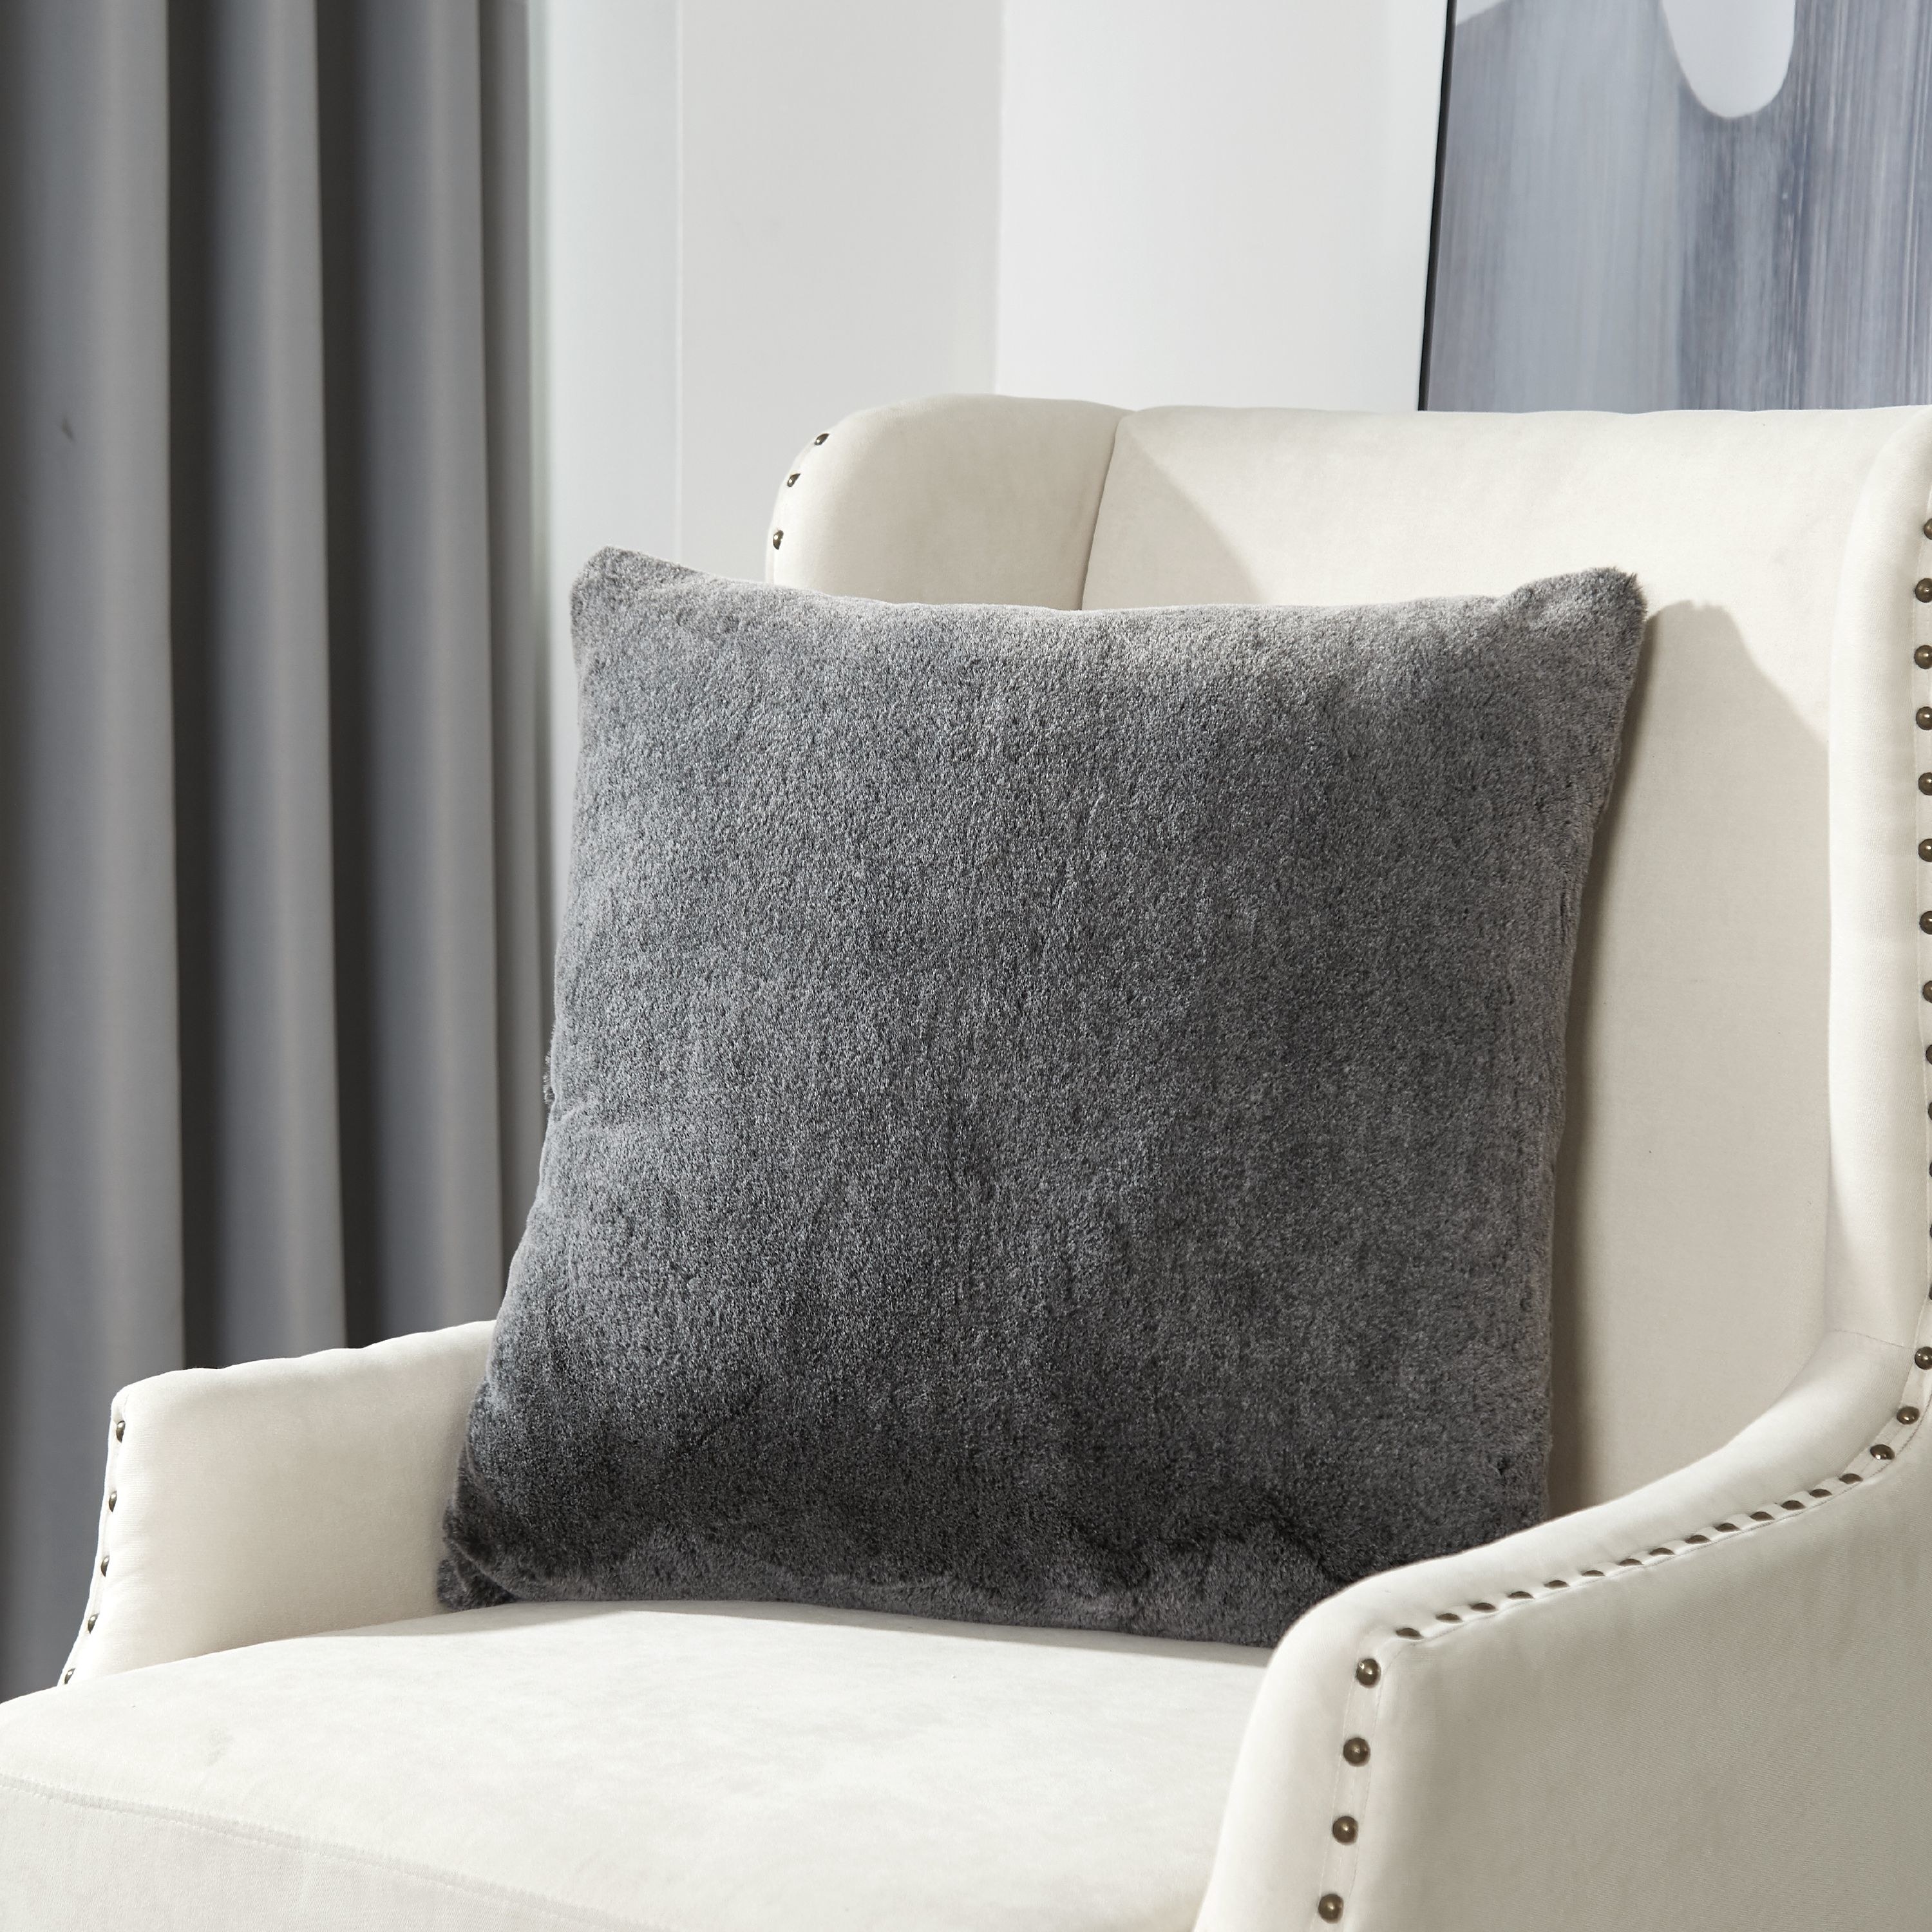 gray faux fur pillow on a white chair